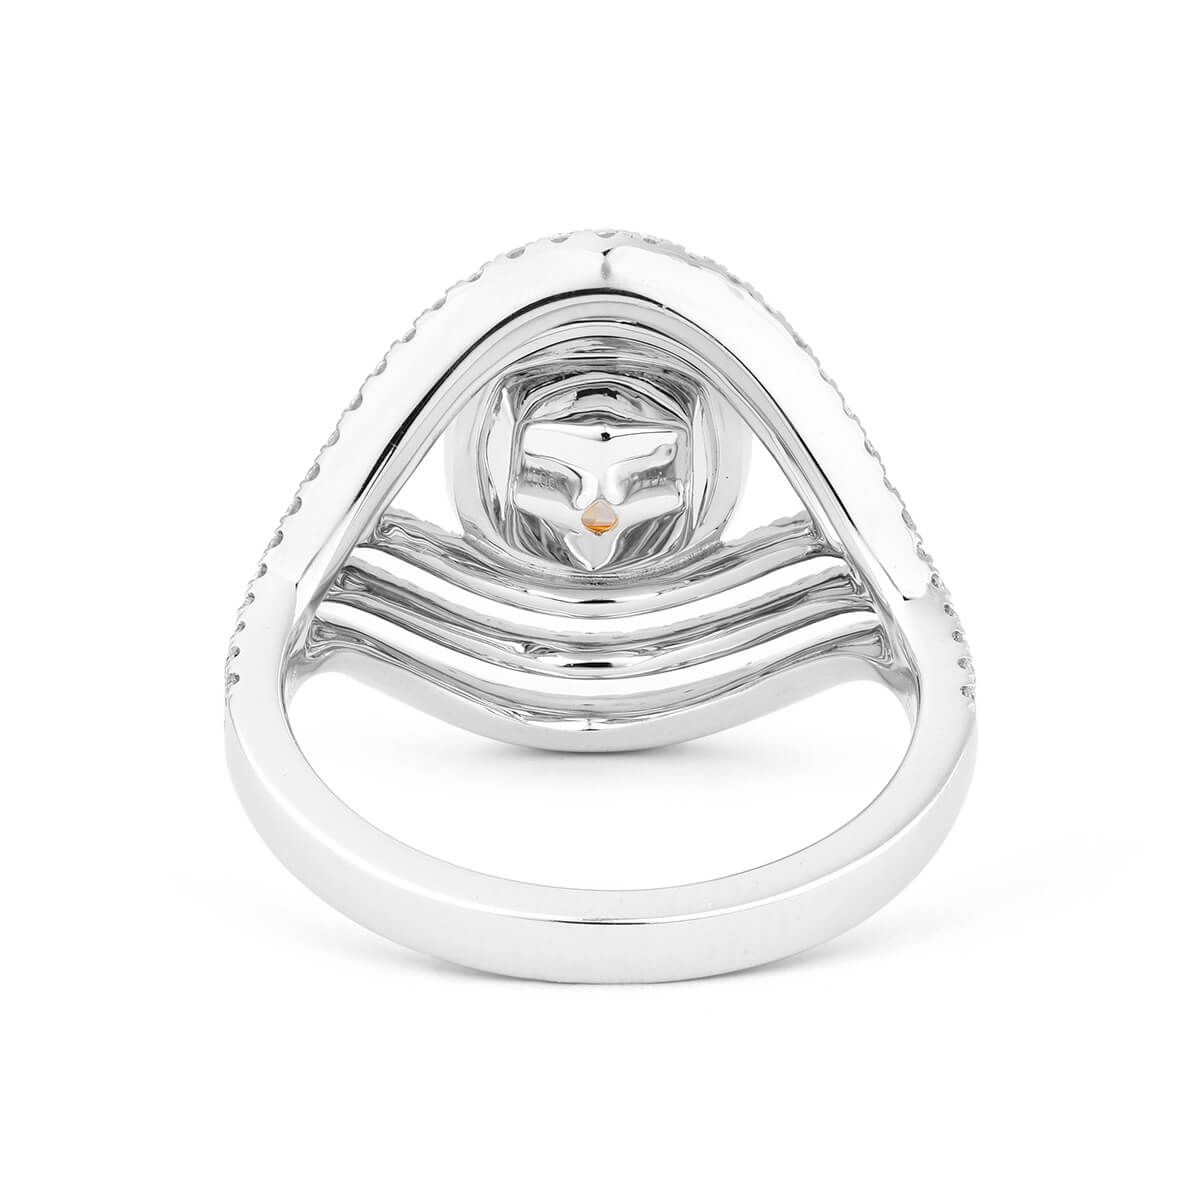 Fancy Yellow Diamond Ring, 1.40 Ct. (2.30 Ct. TW), Cushion shape, GIA Certified, 5181967258